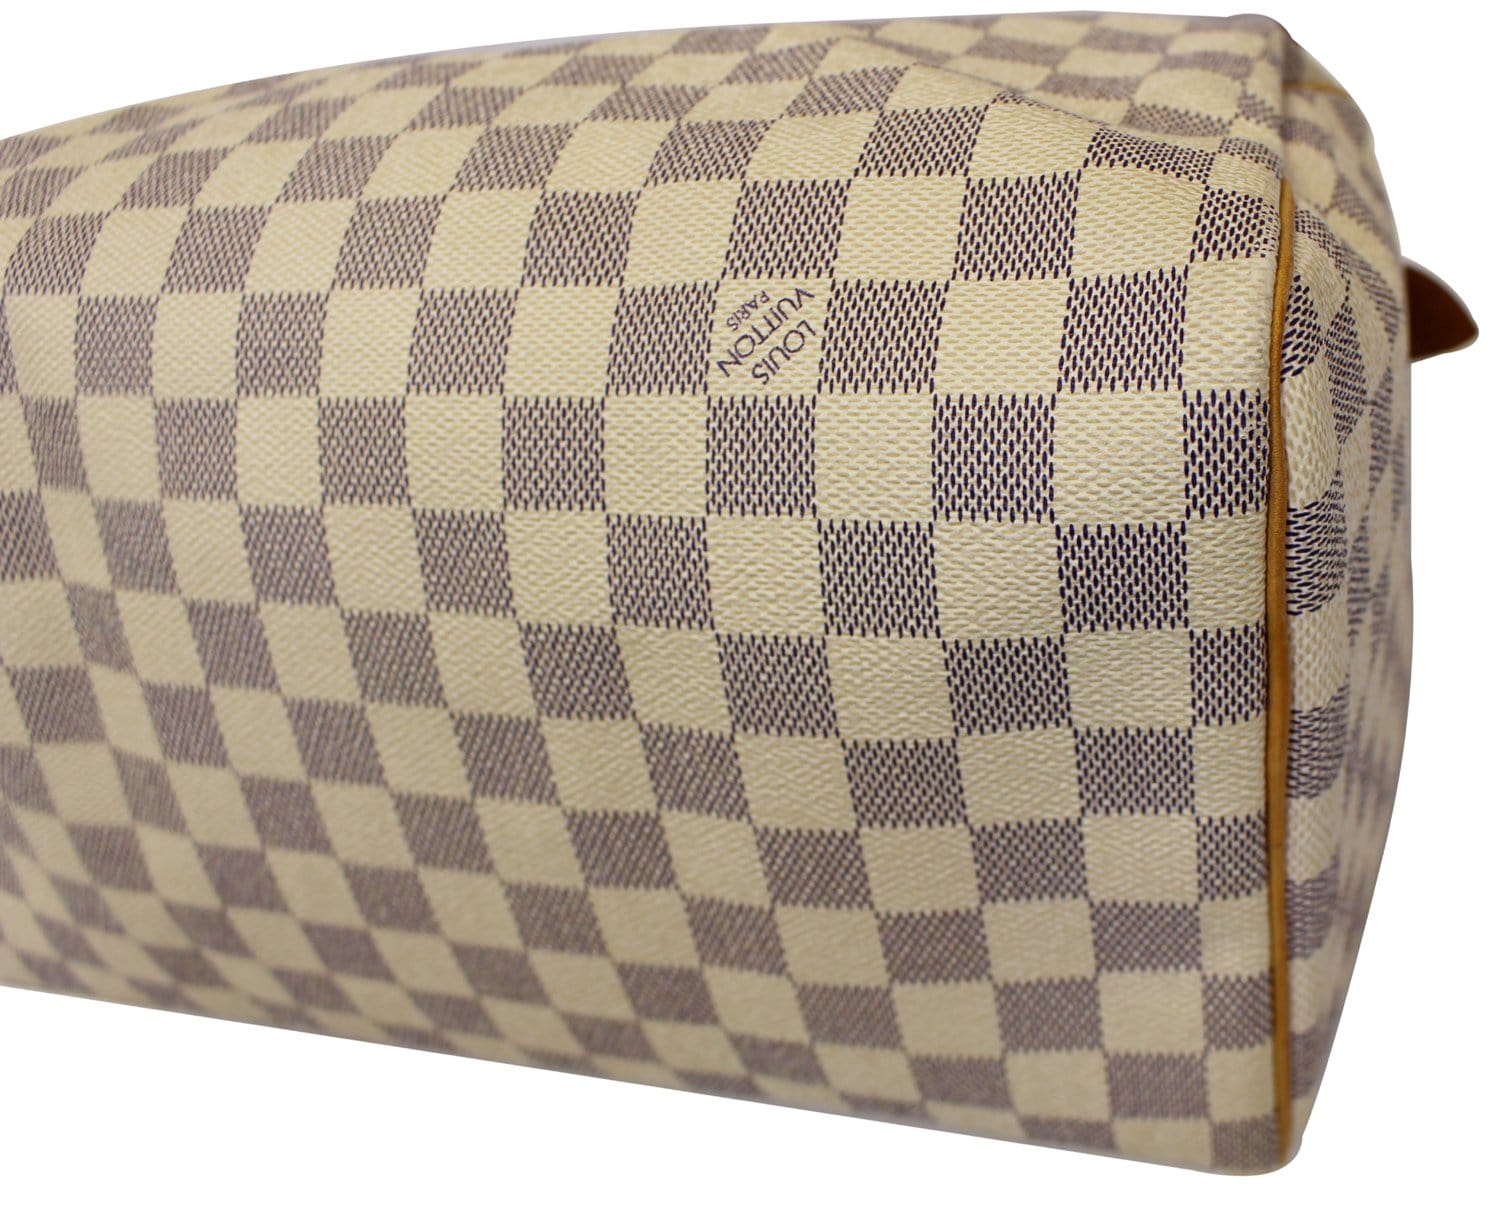 $900 Louis Vuitton Damier Azur Speedy 30 Tote Bag Purse - Lust4Labels